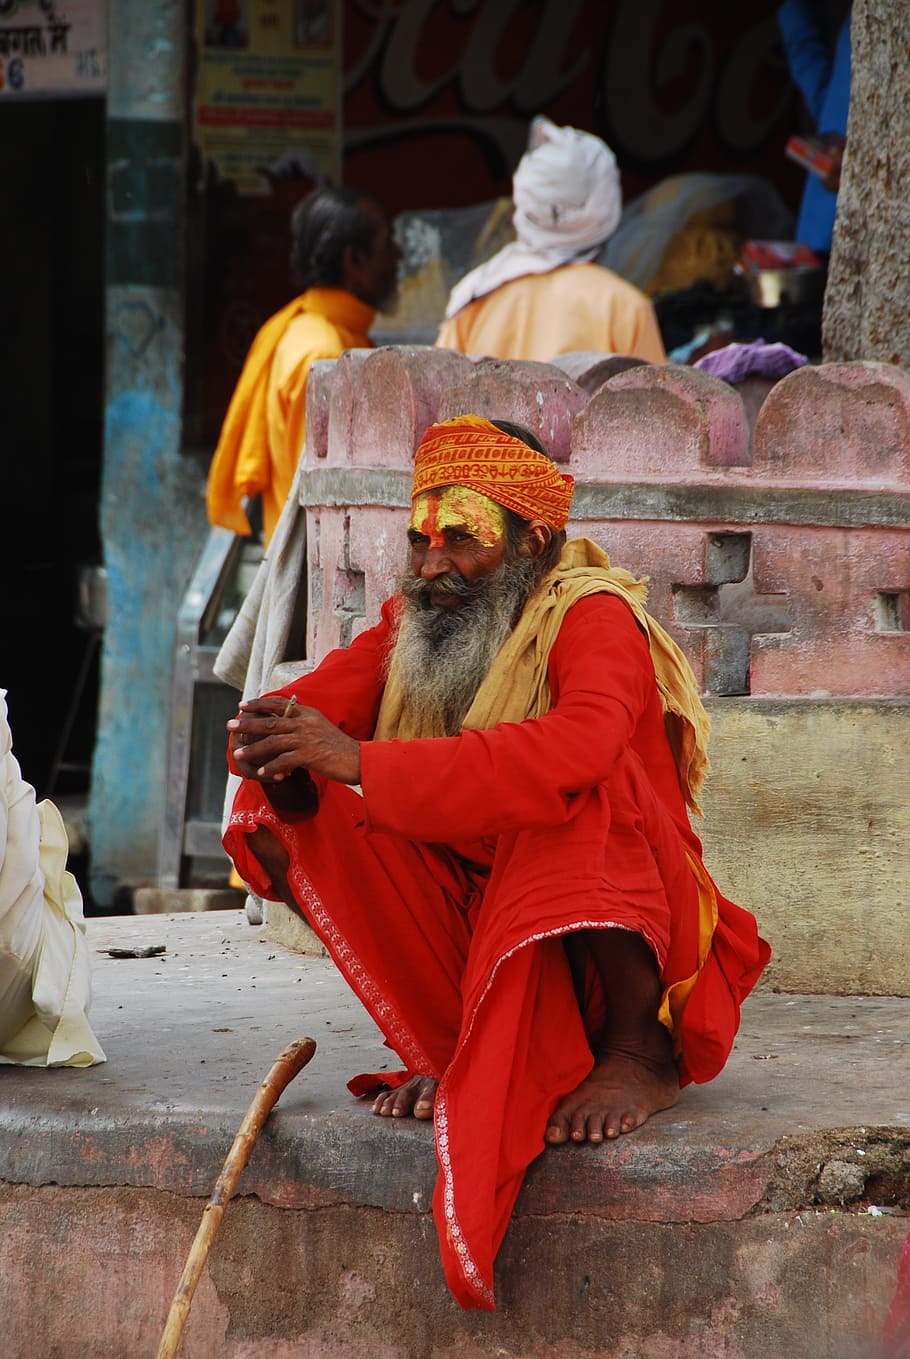 Hombre, India, los lugareños, naranja, ropa, ropa naranja, pintura facial, viajes, tradiciones, tradición